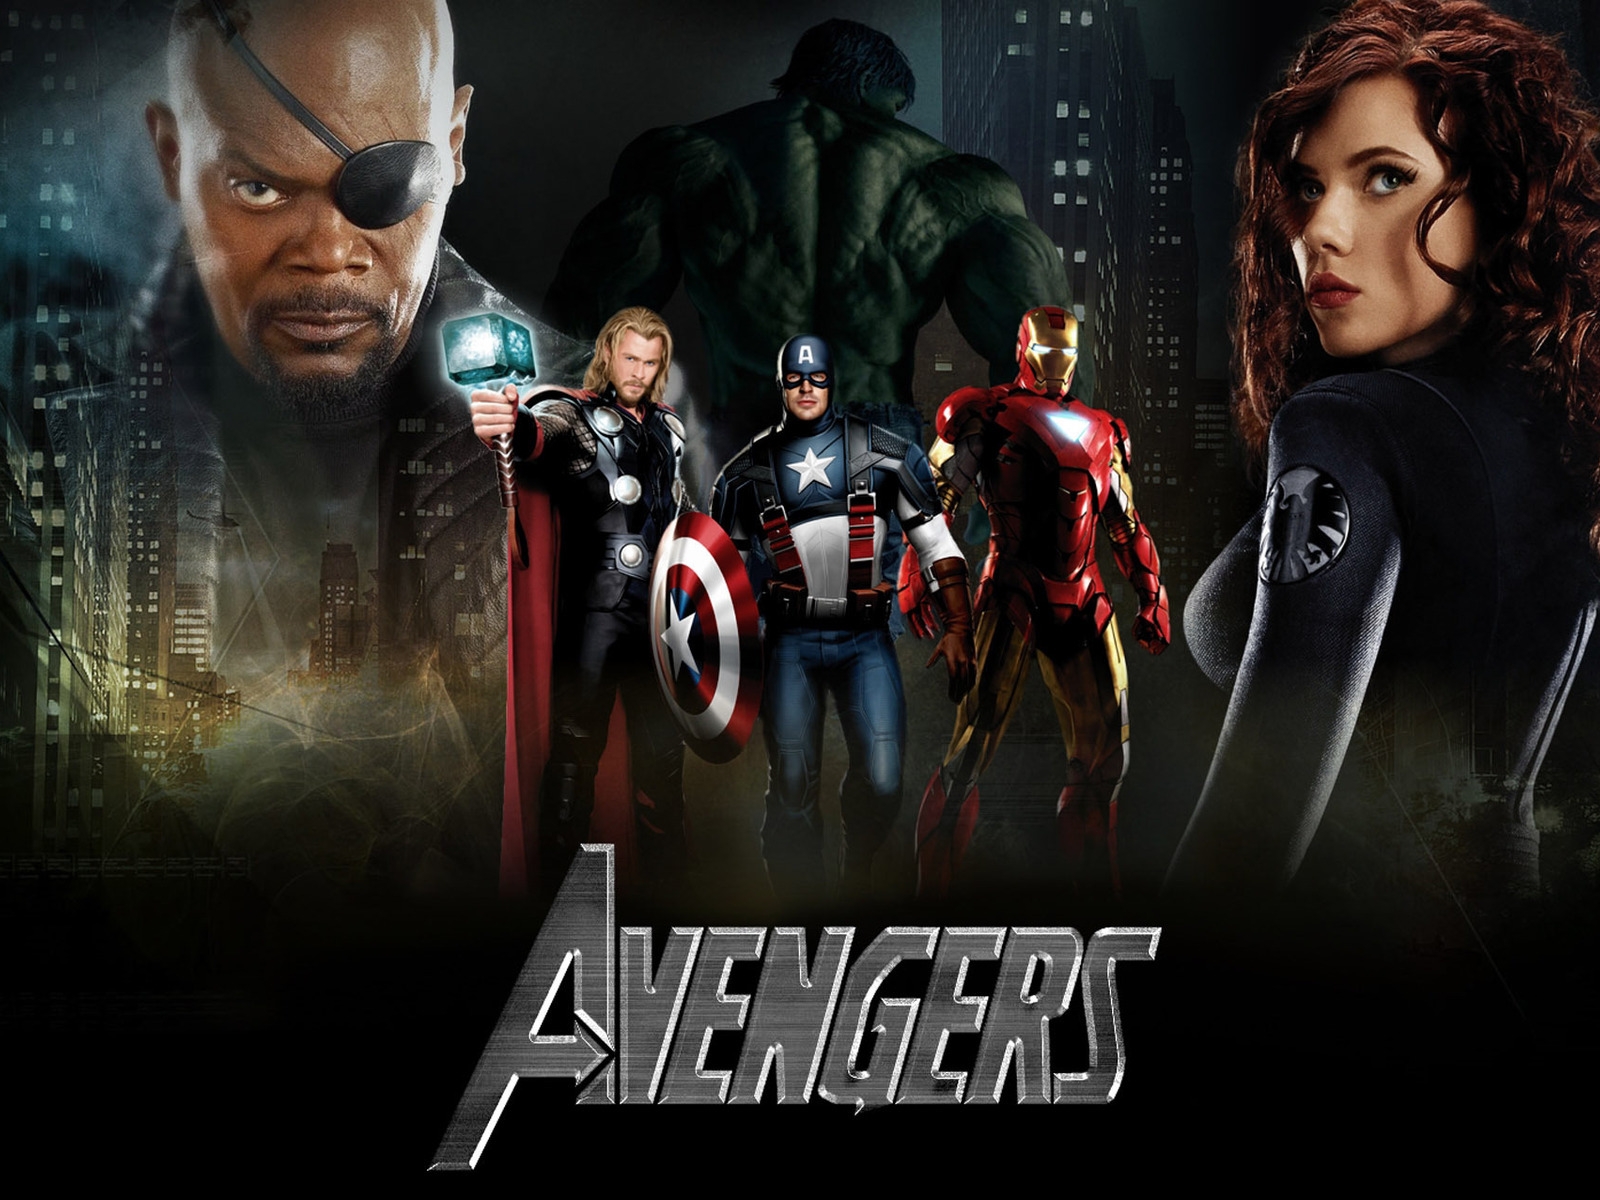 Scarlett Johansson The Avengers 2 for 1600 x 1200 resolution